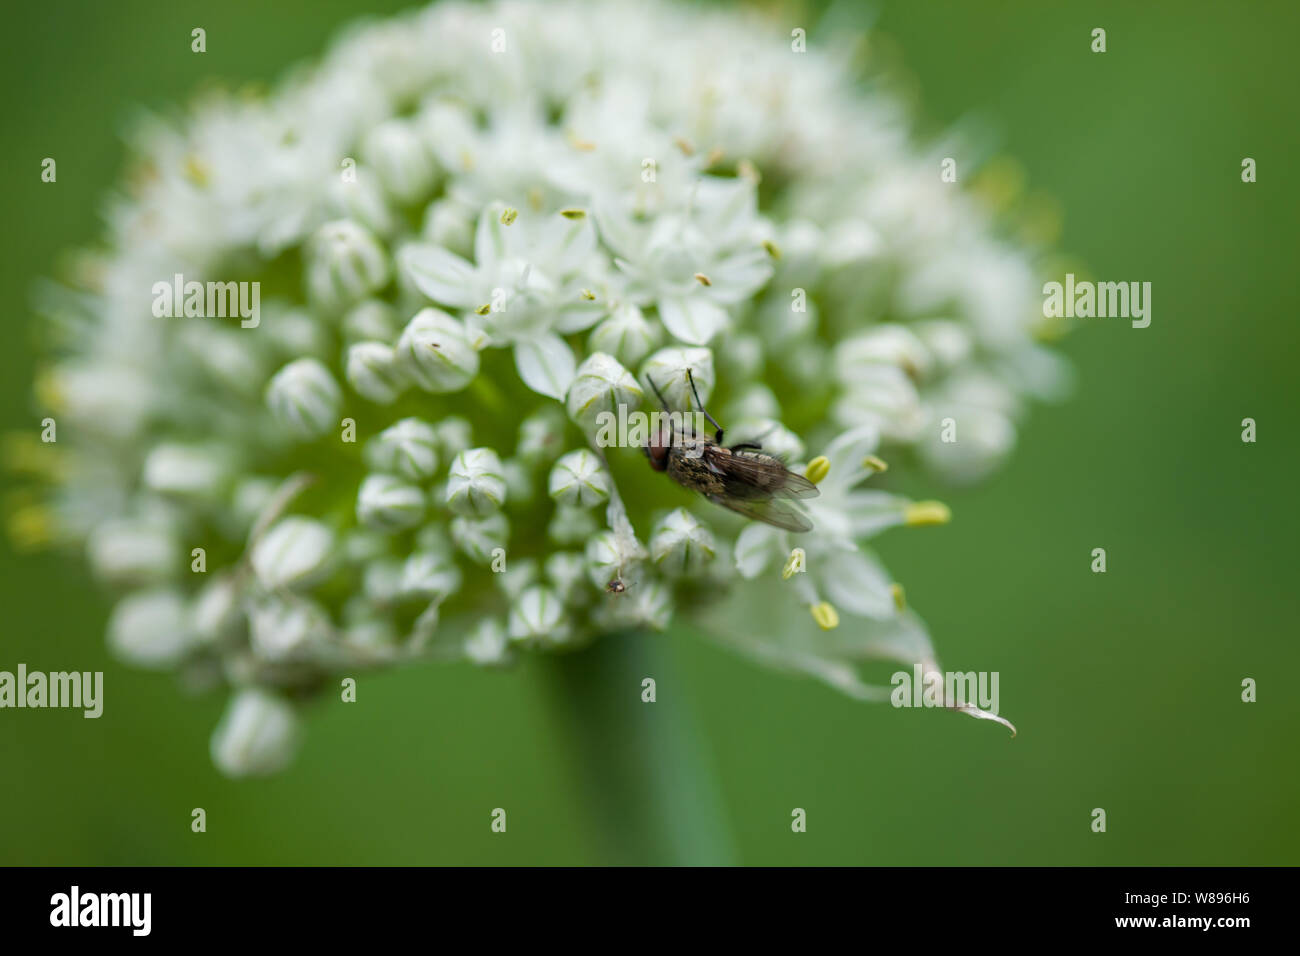 Nahaufnahme von einer Fliege auf einer Zwiebel Blume. Stockfoto